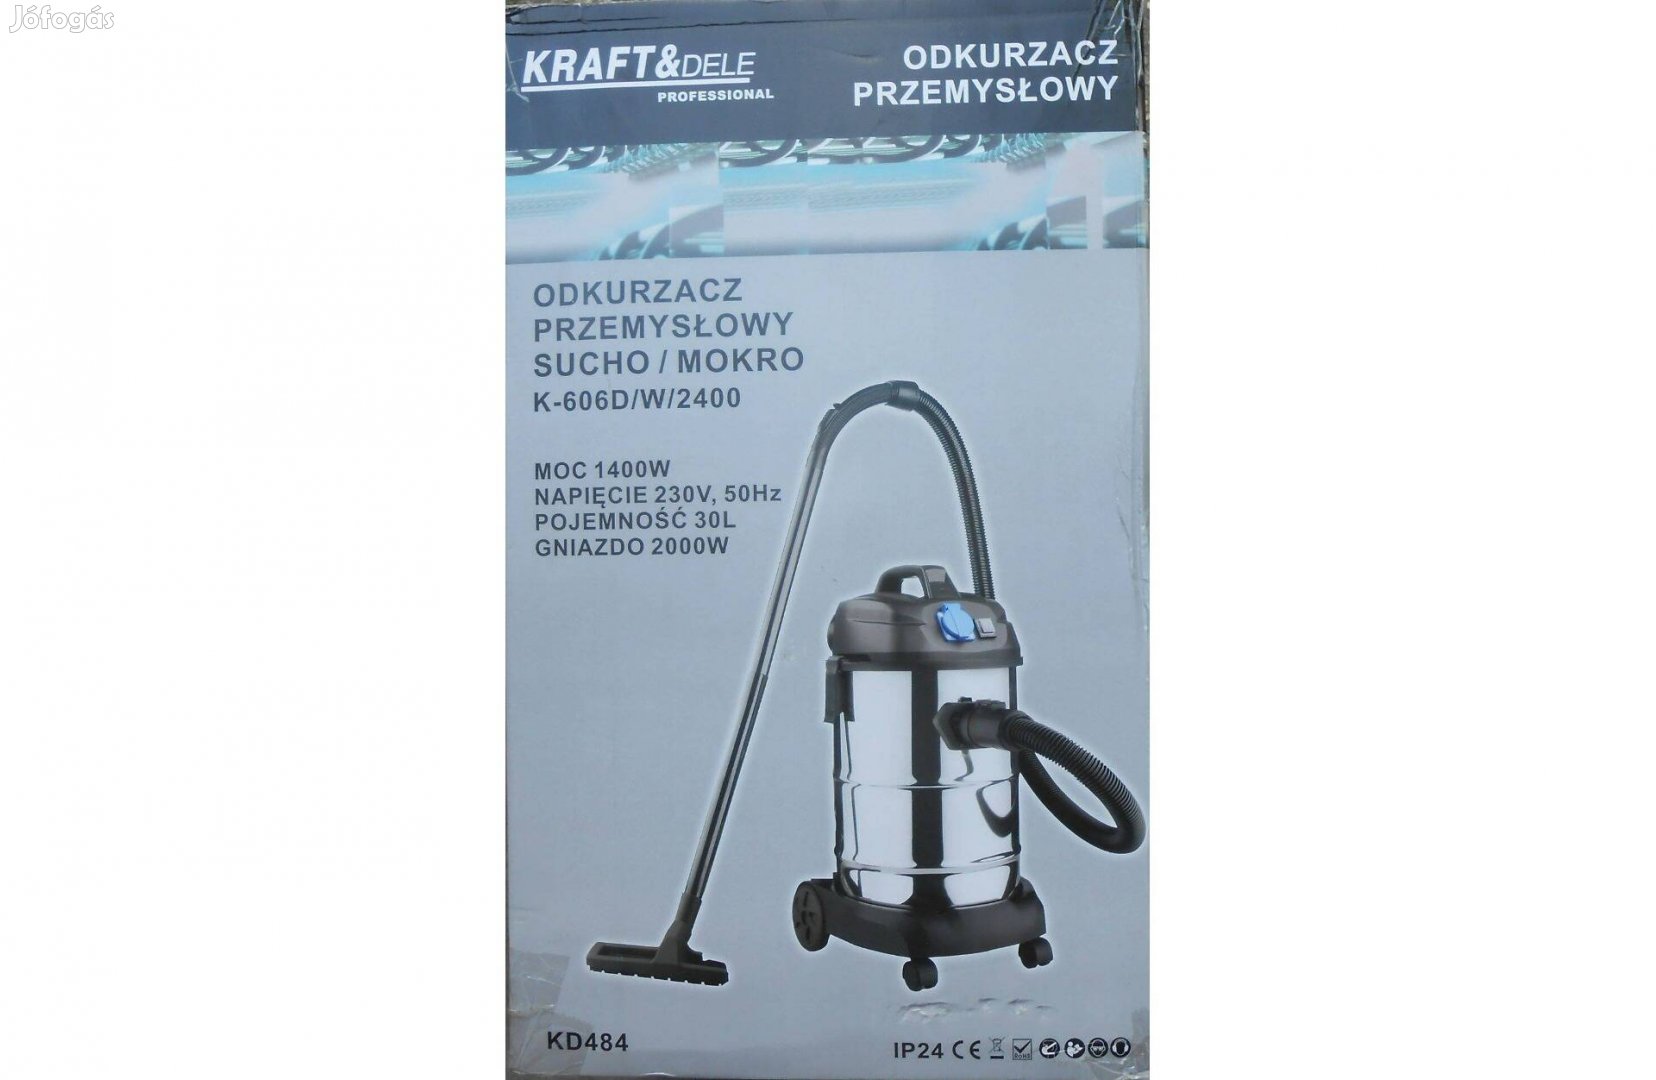 Kraft&Dele KD484 ipari-háztartási porszívó 30L 1400W Garanciával!